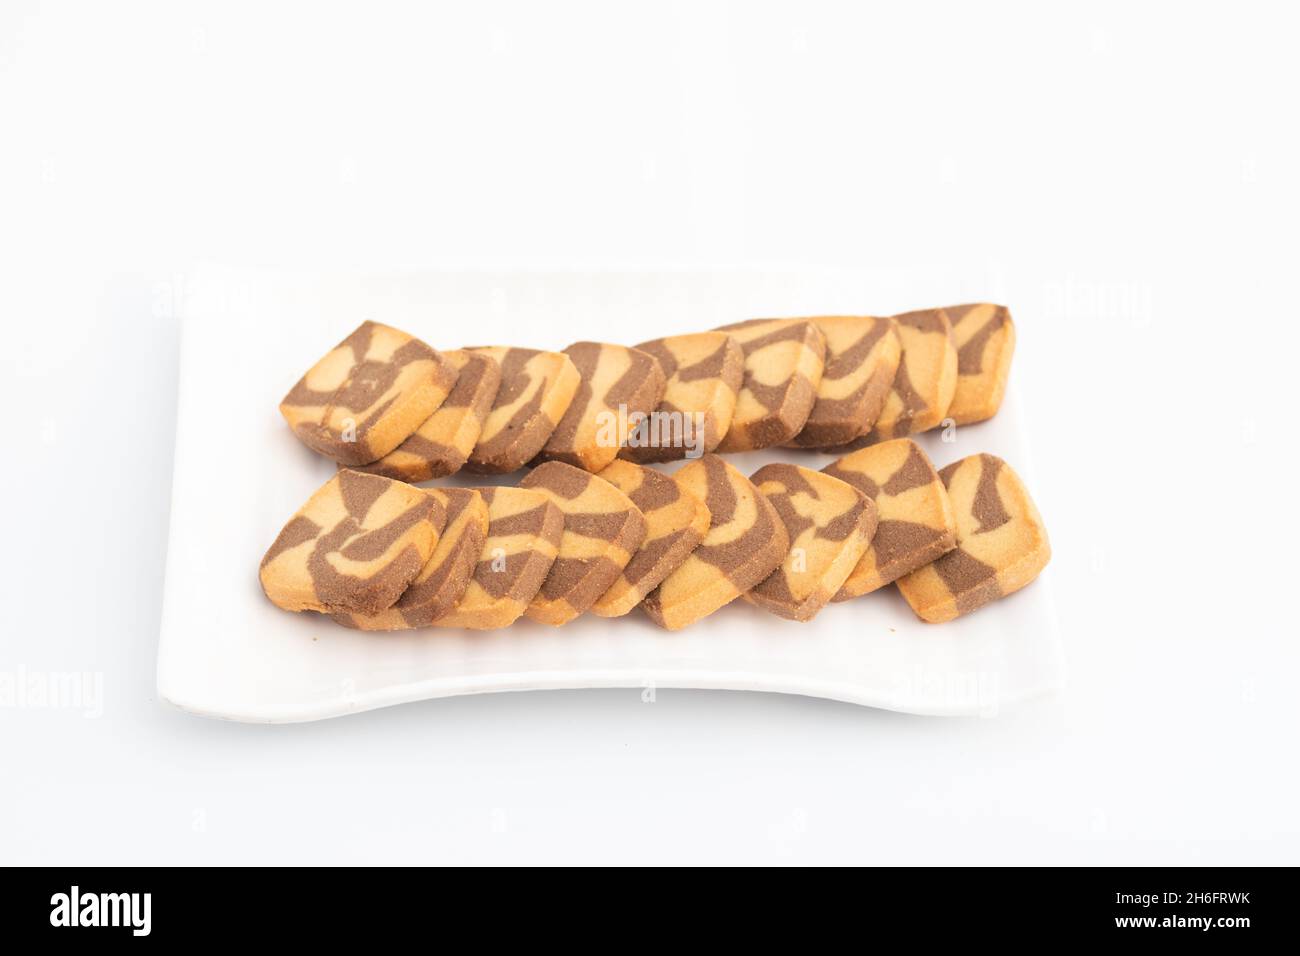 Biscotti a forma quadrata con gocce di cioccolato serviti in vassoio bianco. Isolato su sfondo bianco con spazio di copia per testo personalizzato. Vista laterale e selettiva Foto Stock